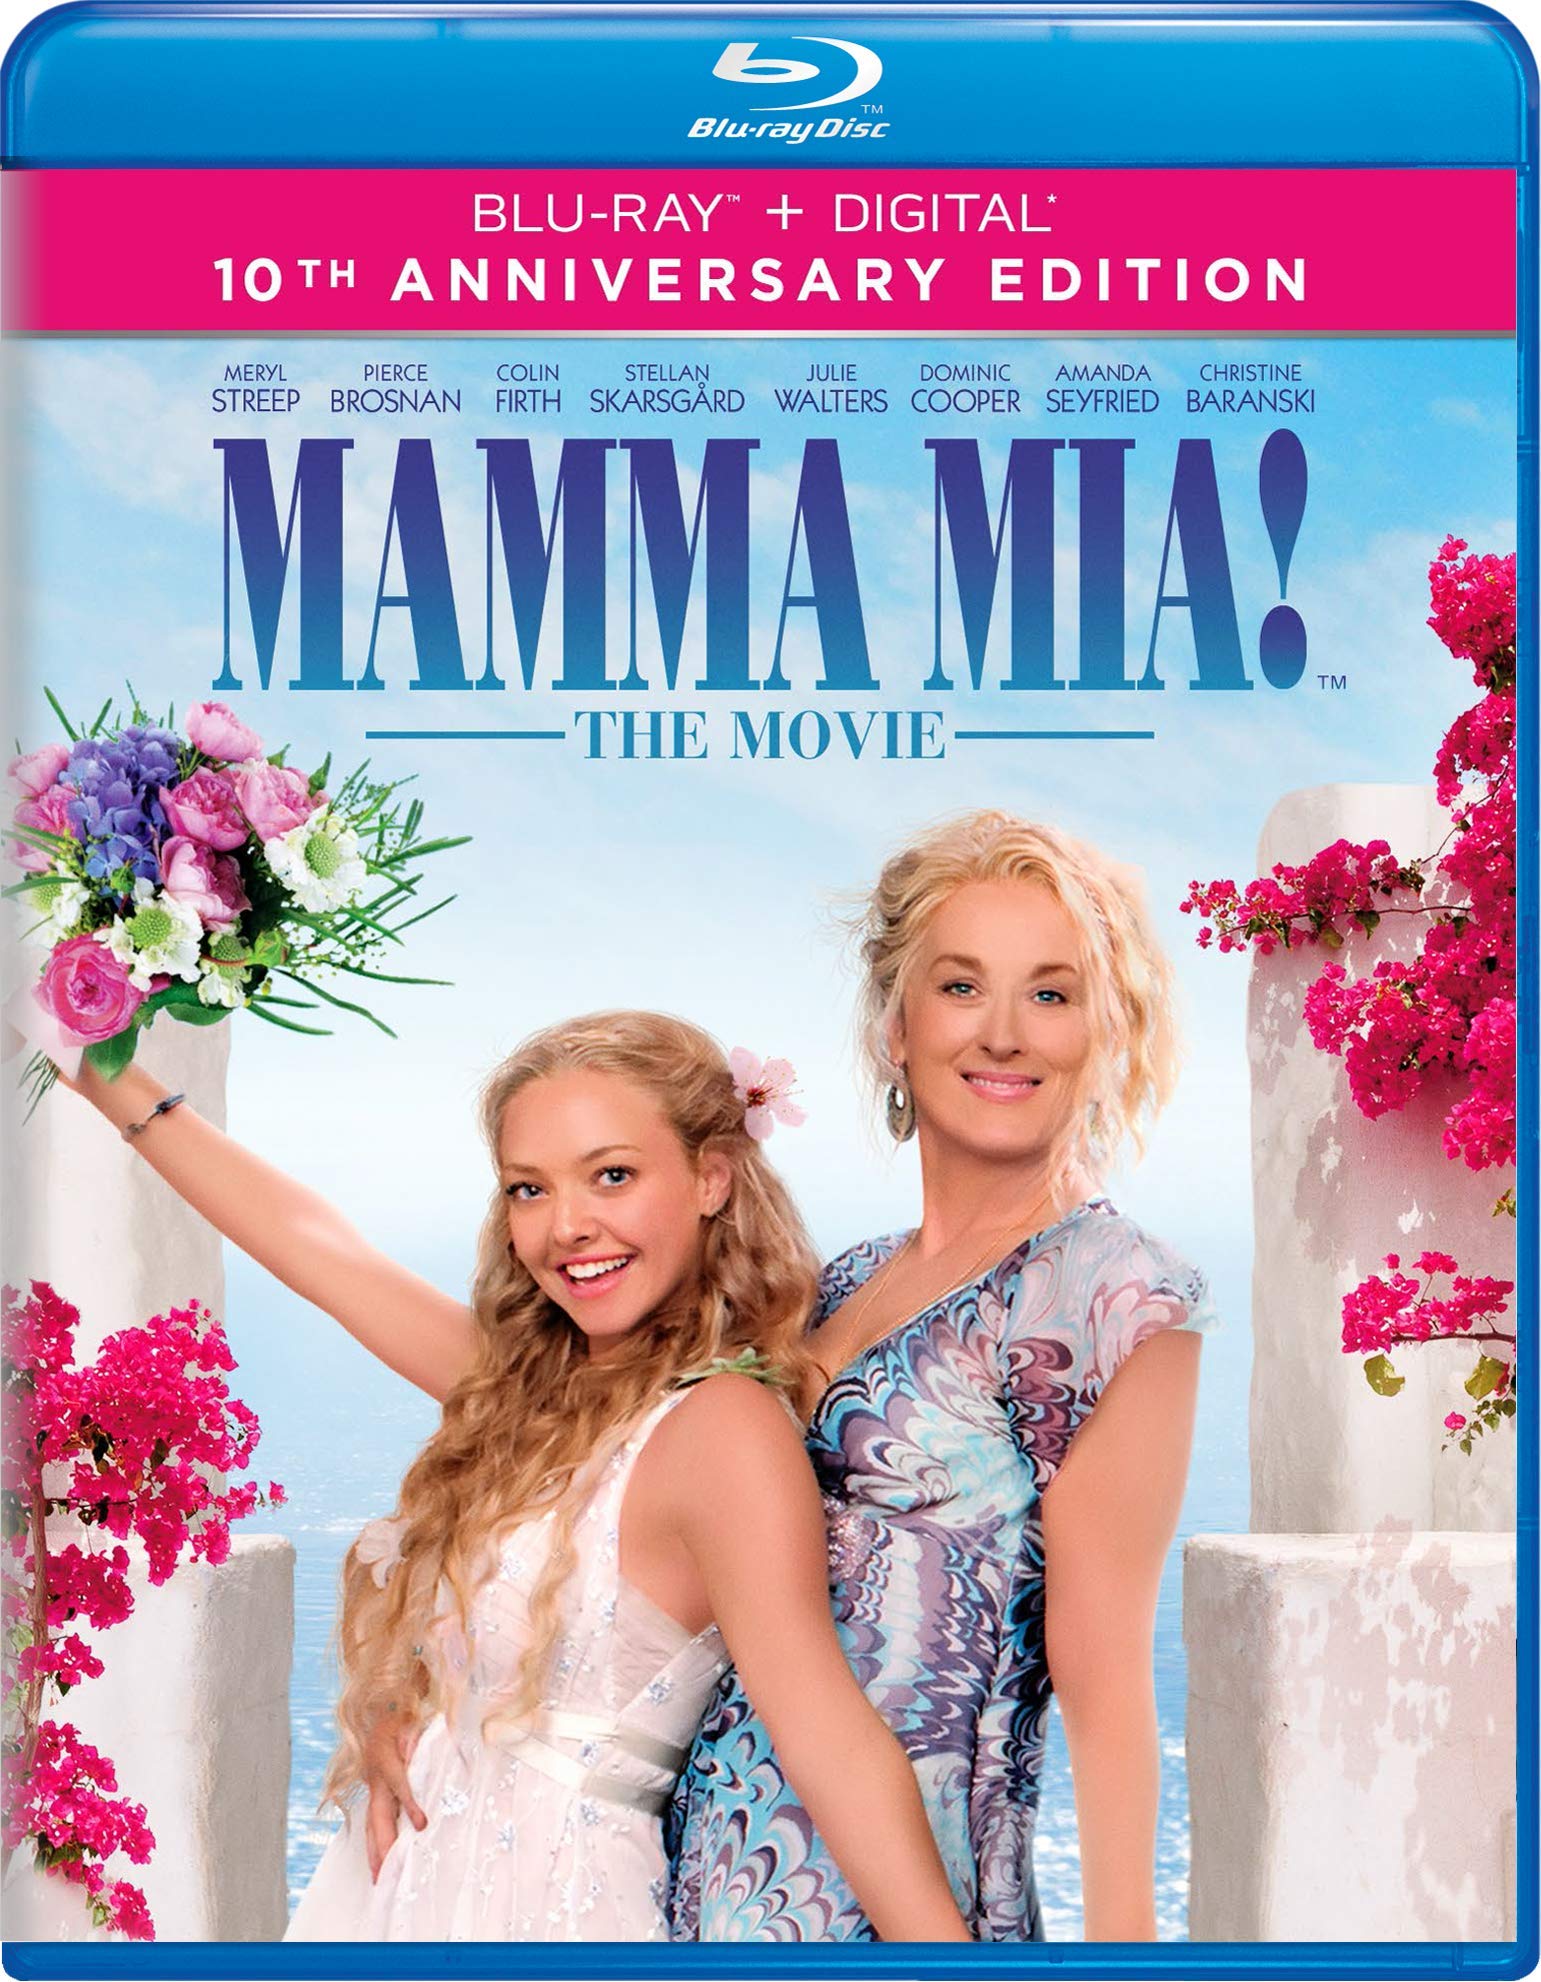 Book Cover Mamma Mia! The Movie